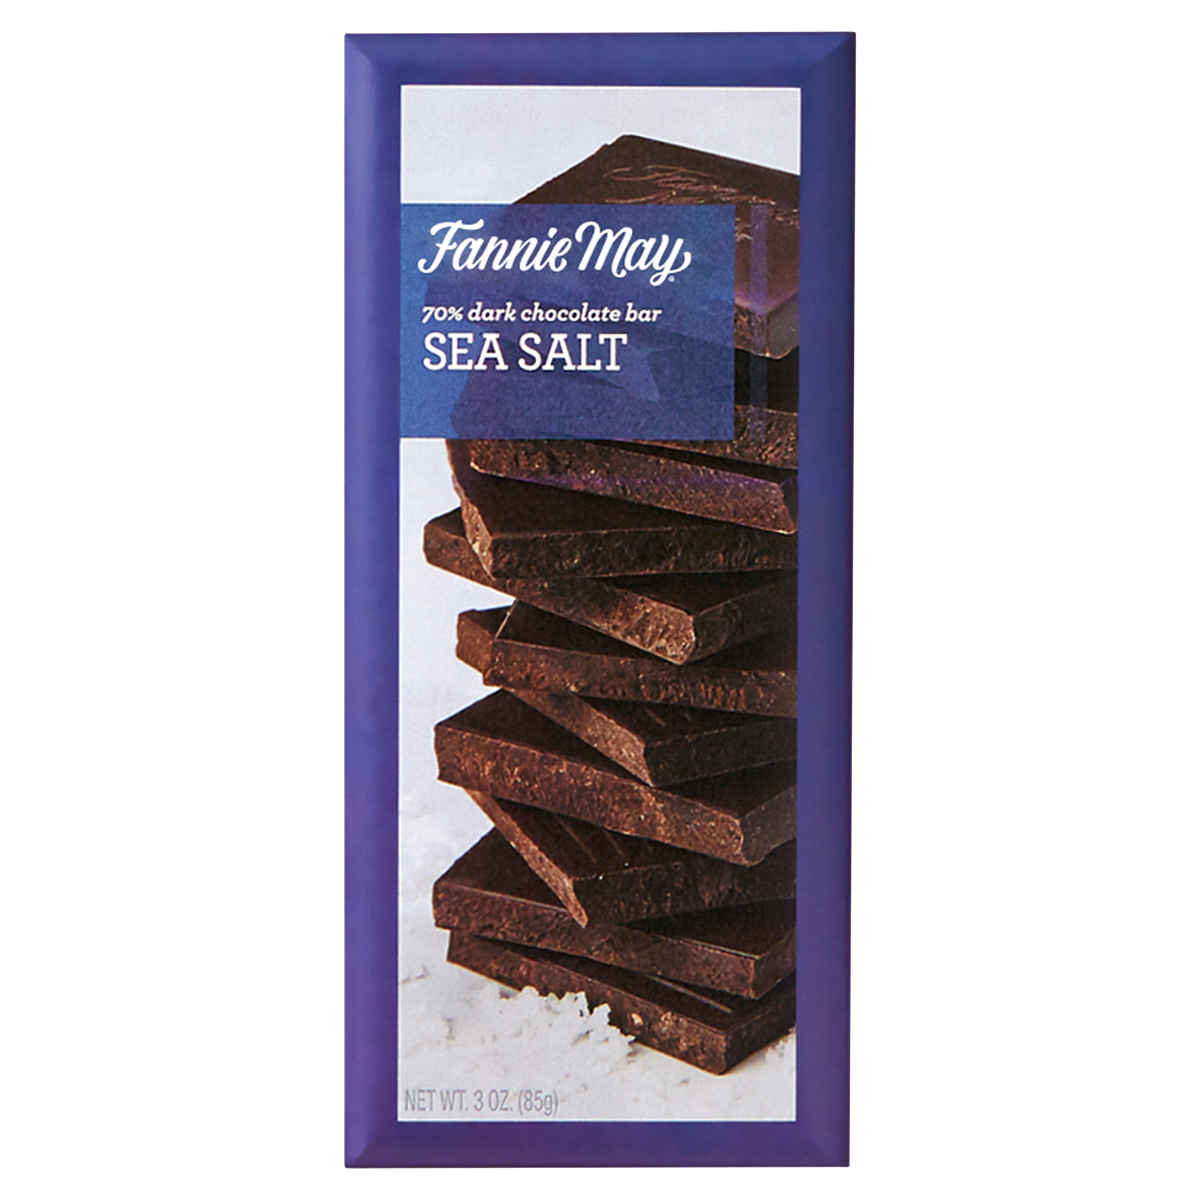 slide 1 of 1, Fannie May Sea Salt 70% Dark Chocolate Bar, 3 oz